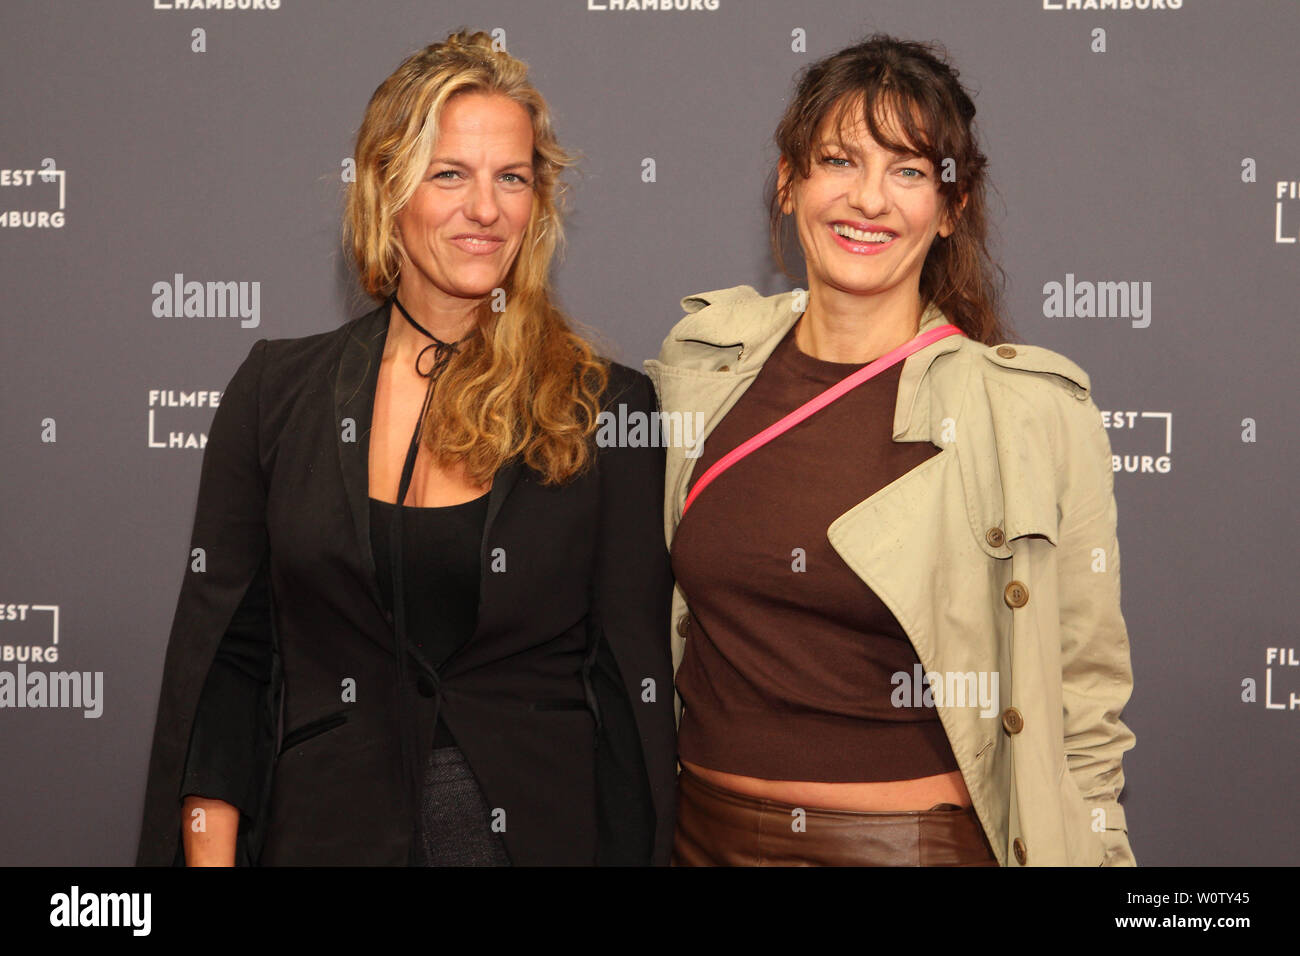 Janna und Catrin Striebeck, Filmfest de Hamburgo, 04.10.2018 Foto de stock